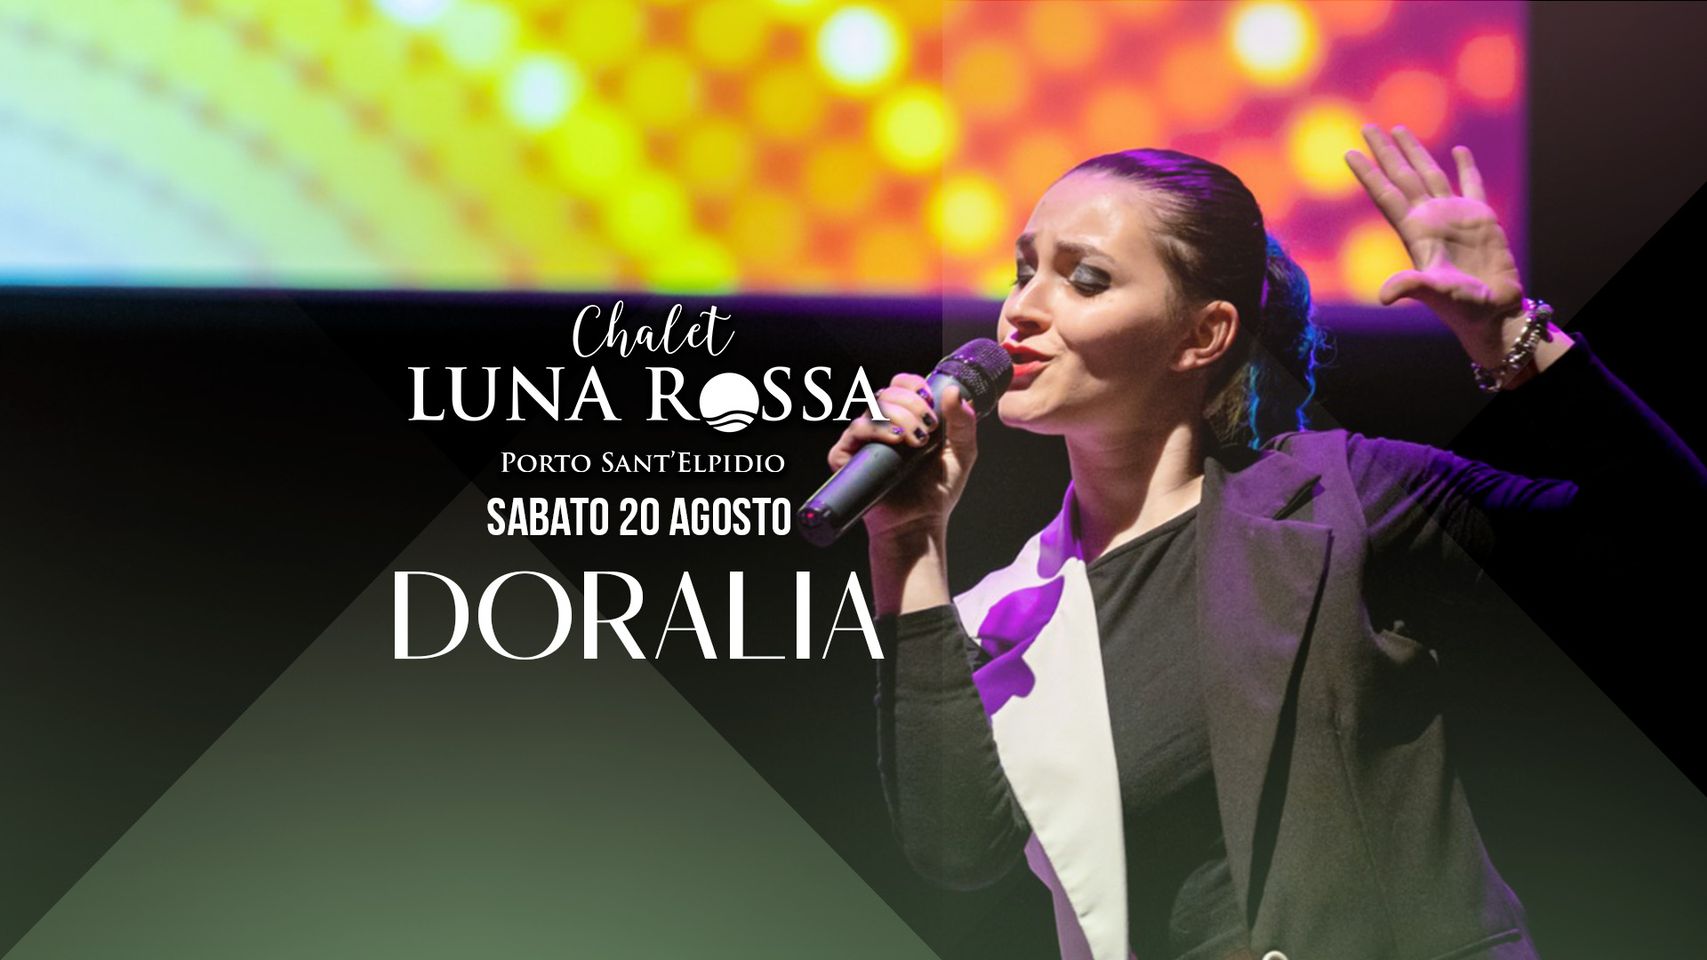 Doralia live cena in musica sabato 20 agosto